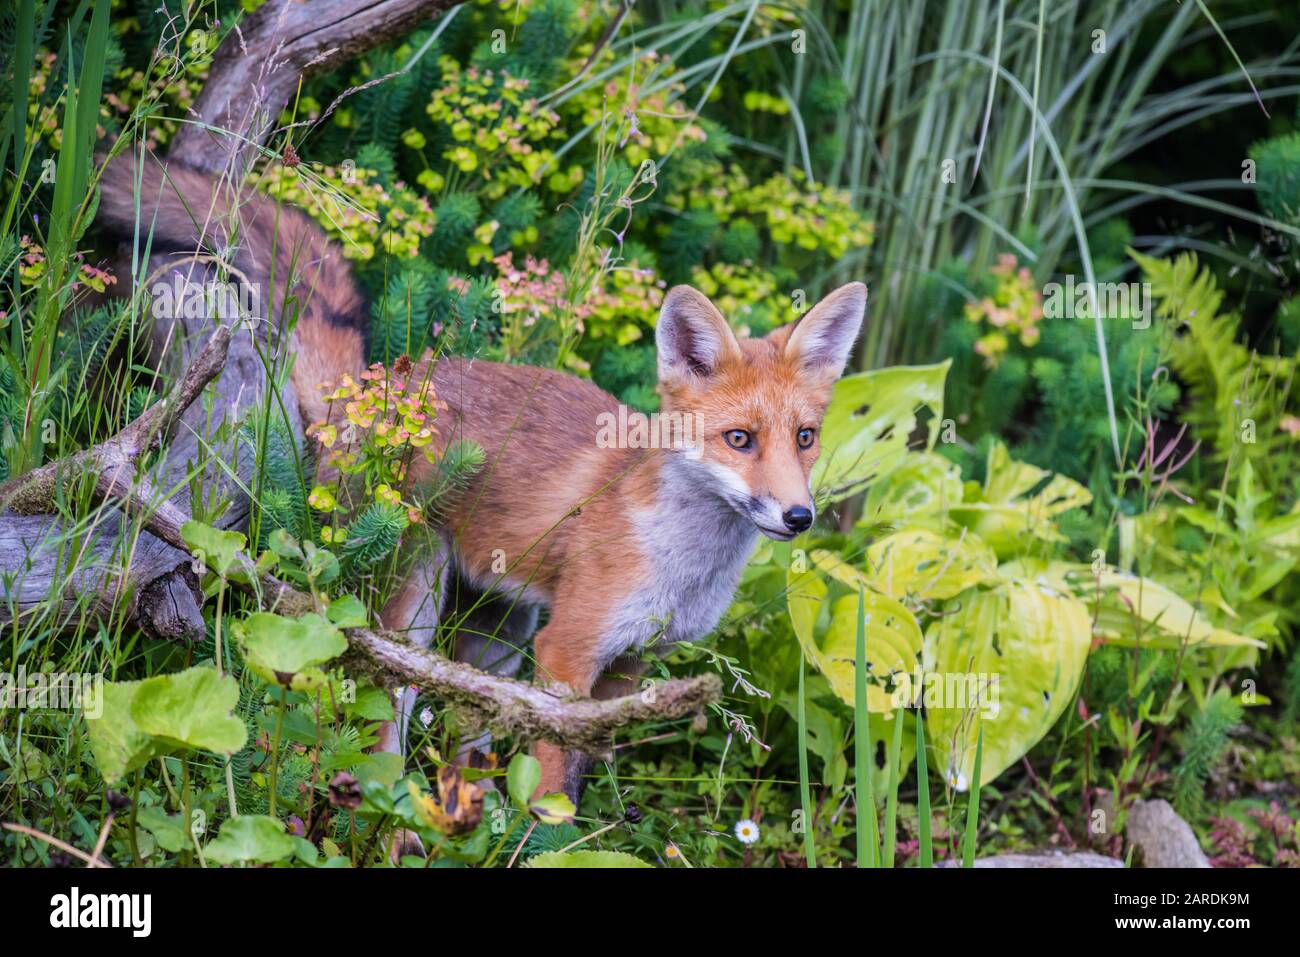 Curieux jeune renard rouge (Vulpes vulpes) photographié dans le jardin. Chaude journée d'été, Wormley près de Godalming, Angleterre Banque D'Images